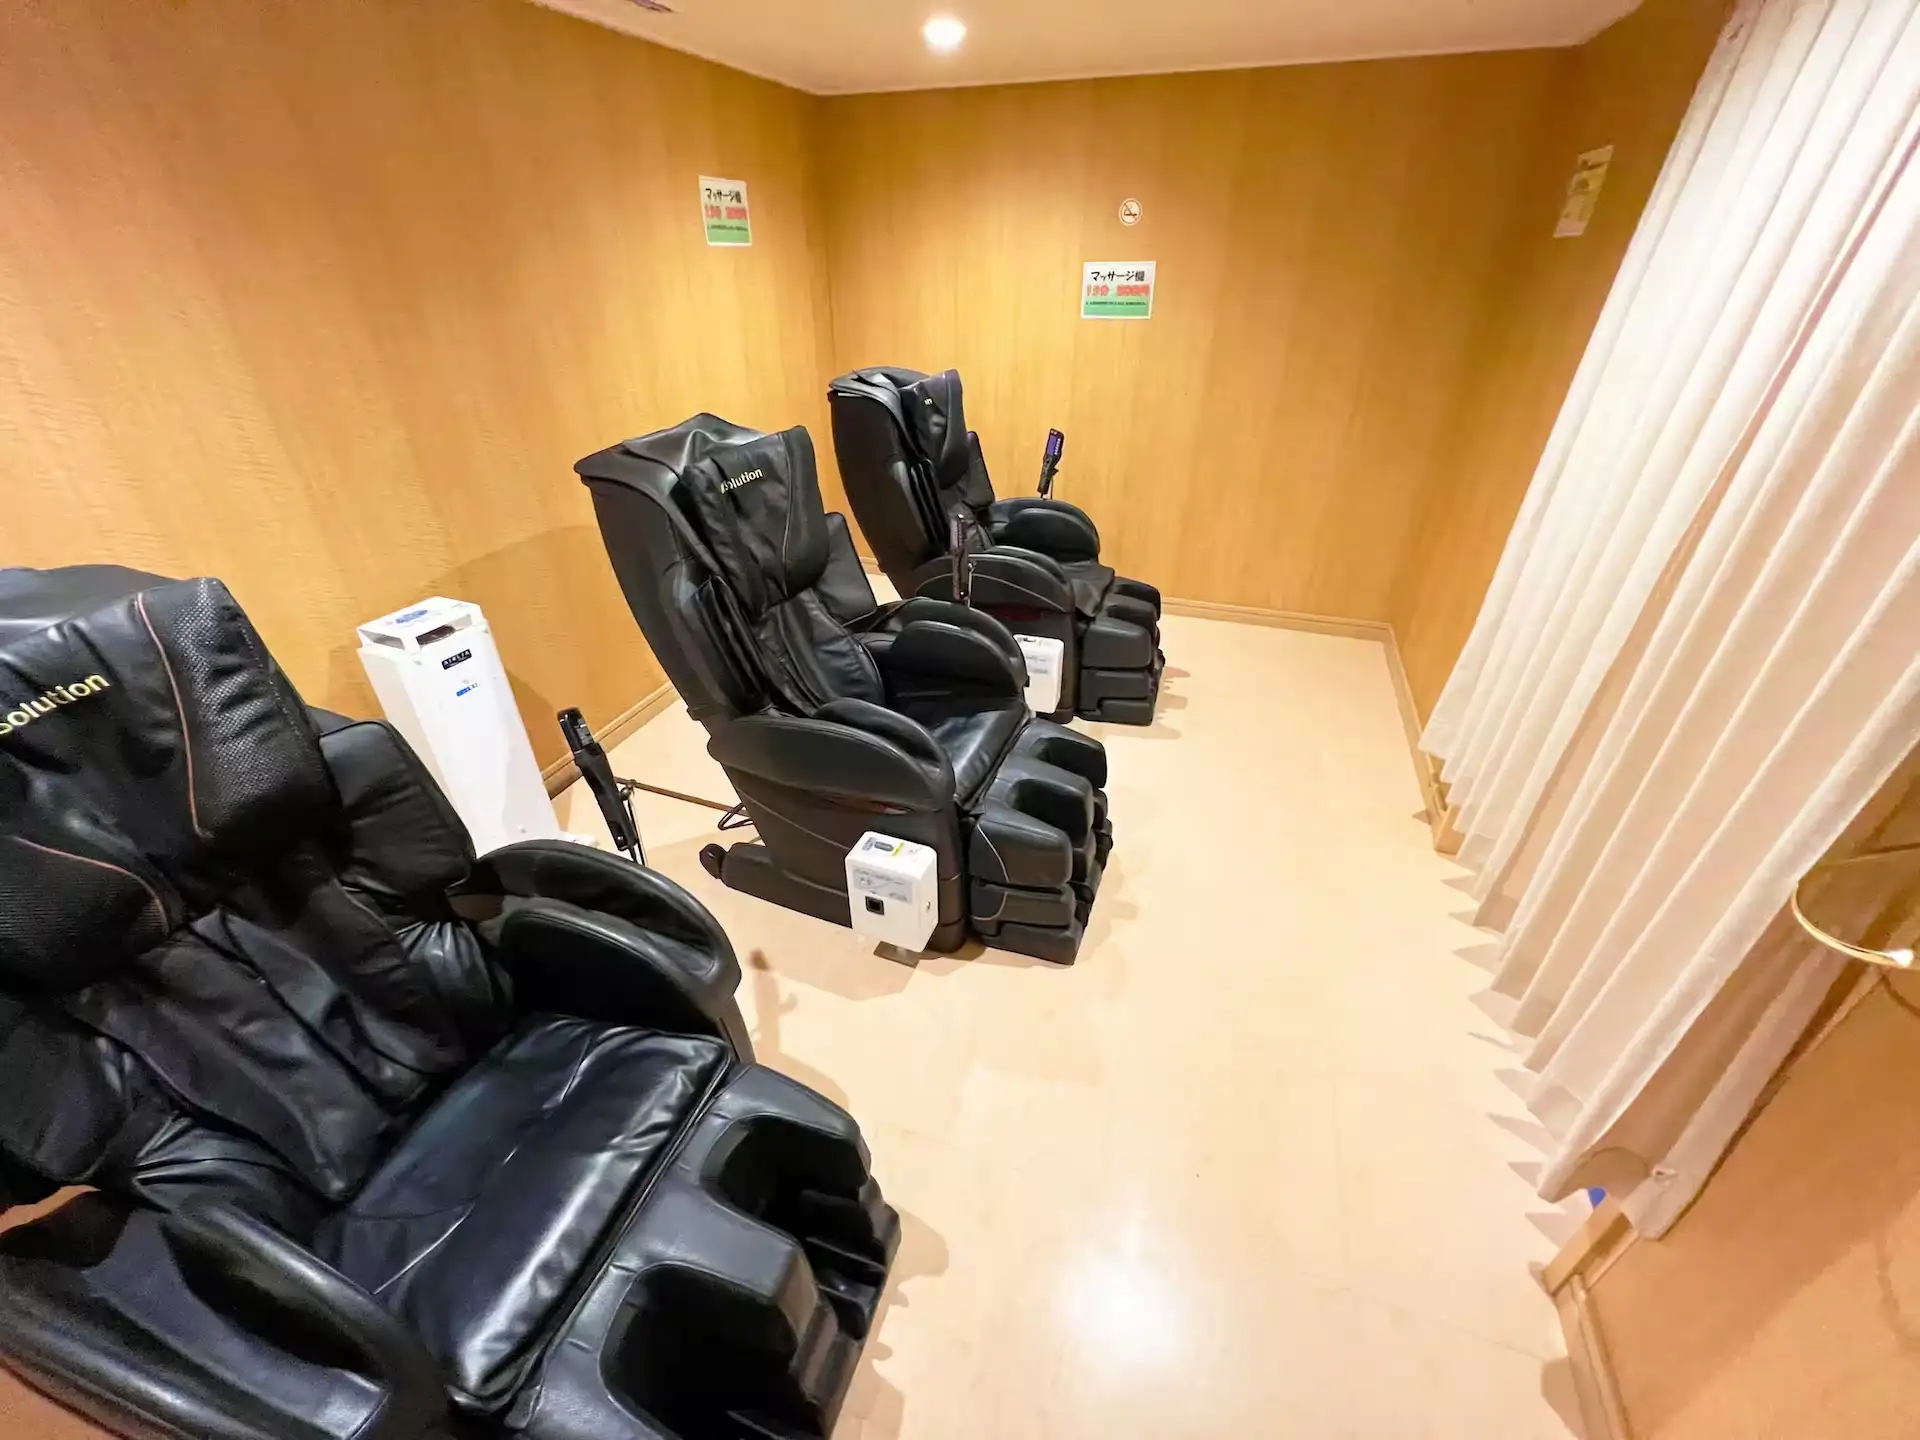 한큐 페리 Settsu 내부 휴식 공간에 배치된 마사지 의자